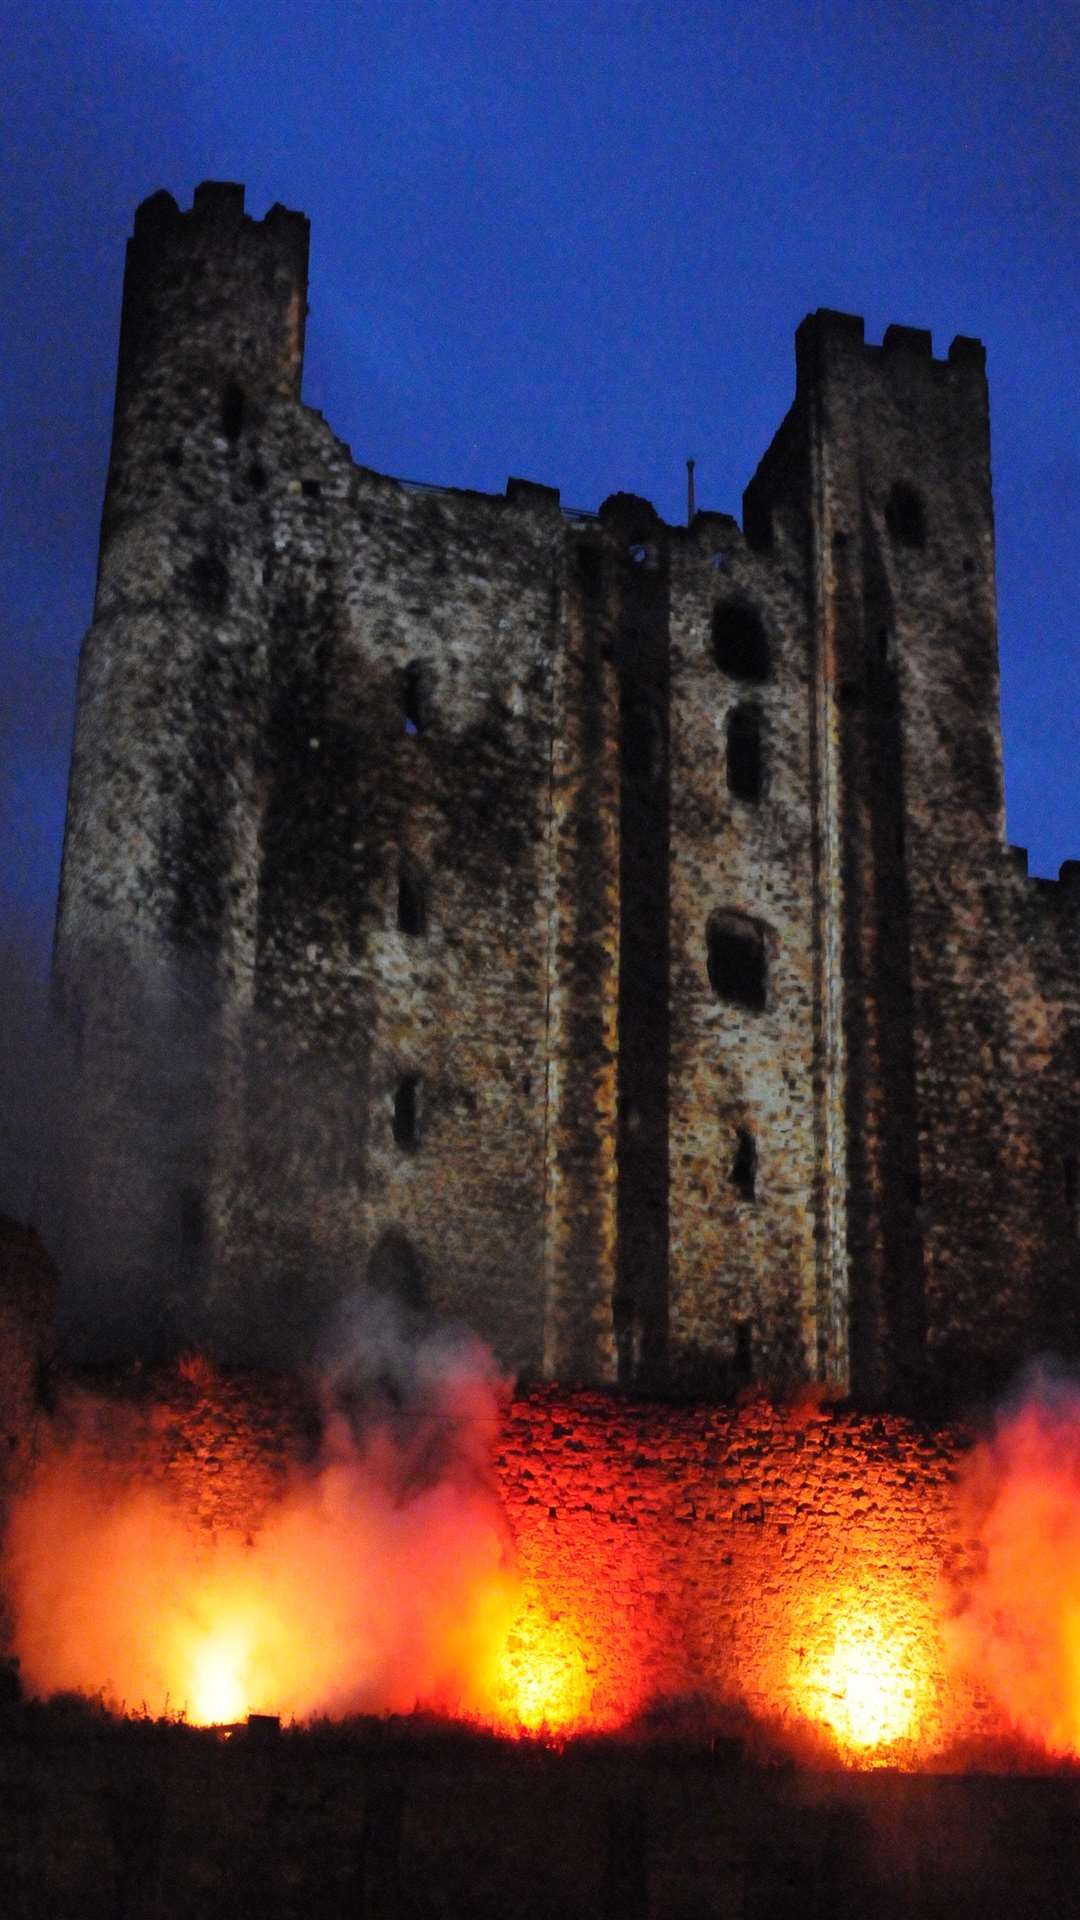 Rochester Castle lit up